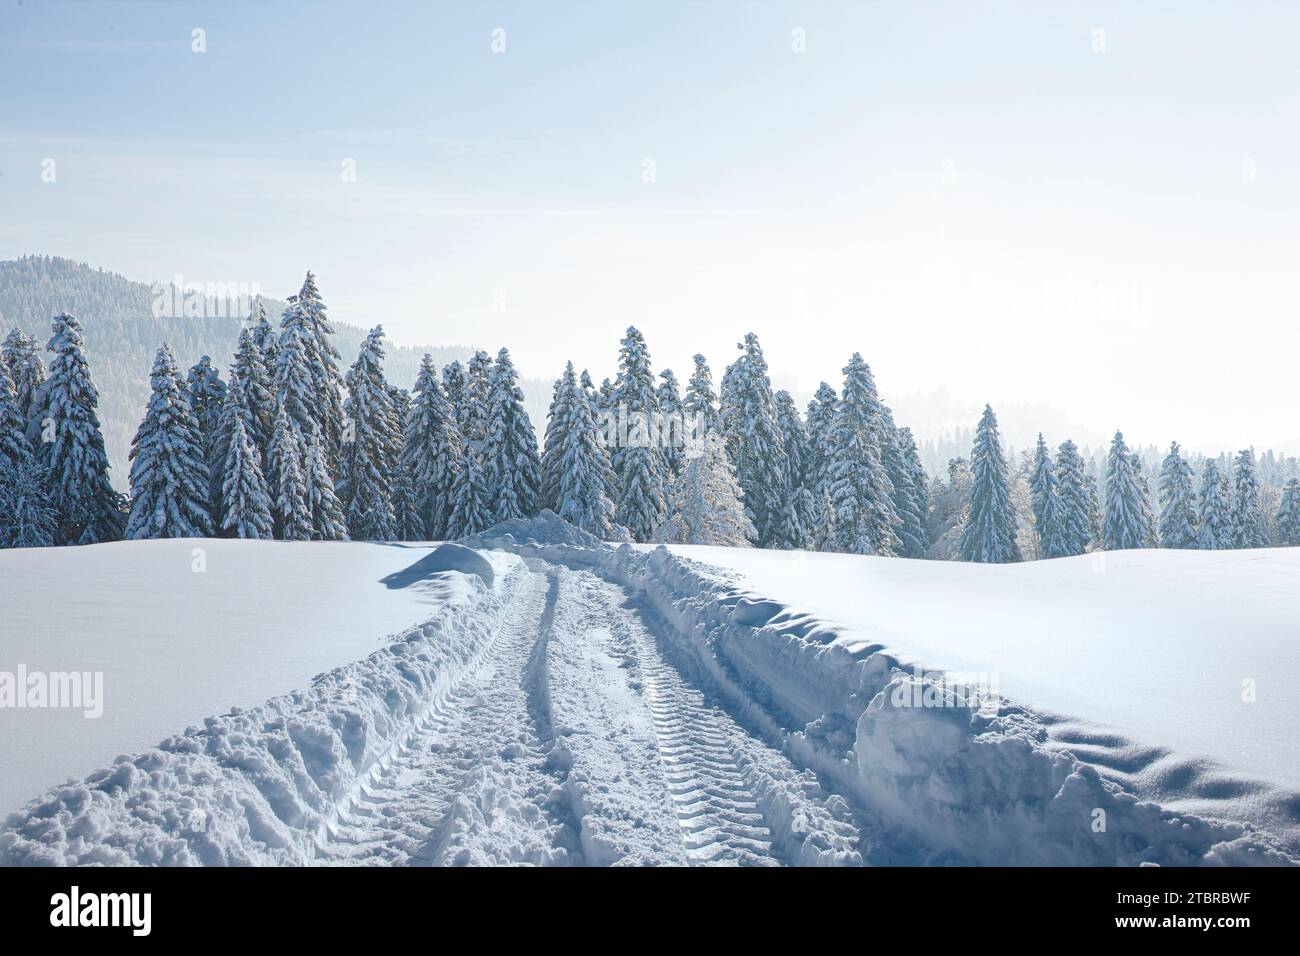 Route de neige en hiver à travers un paysage enneigé Banque D'Images